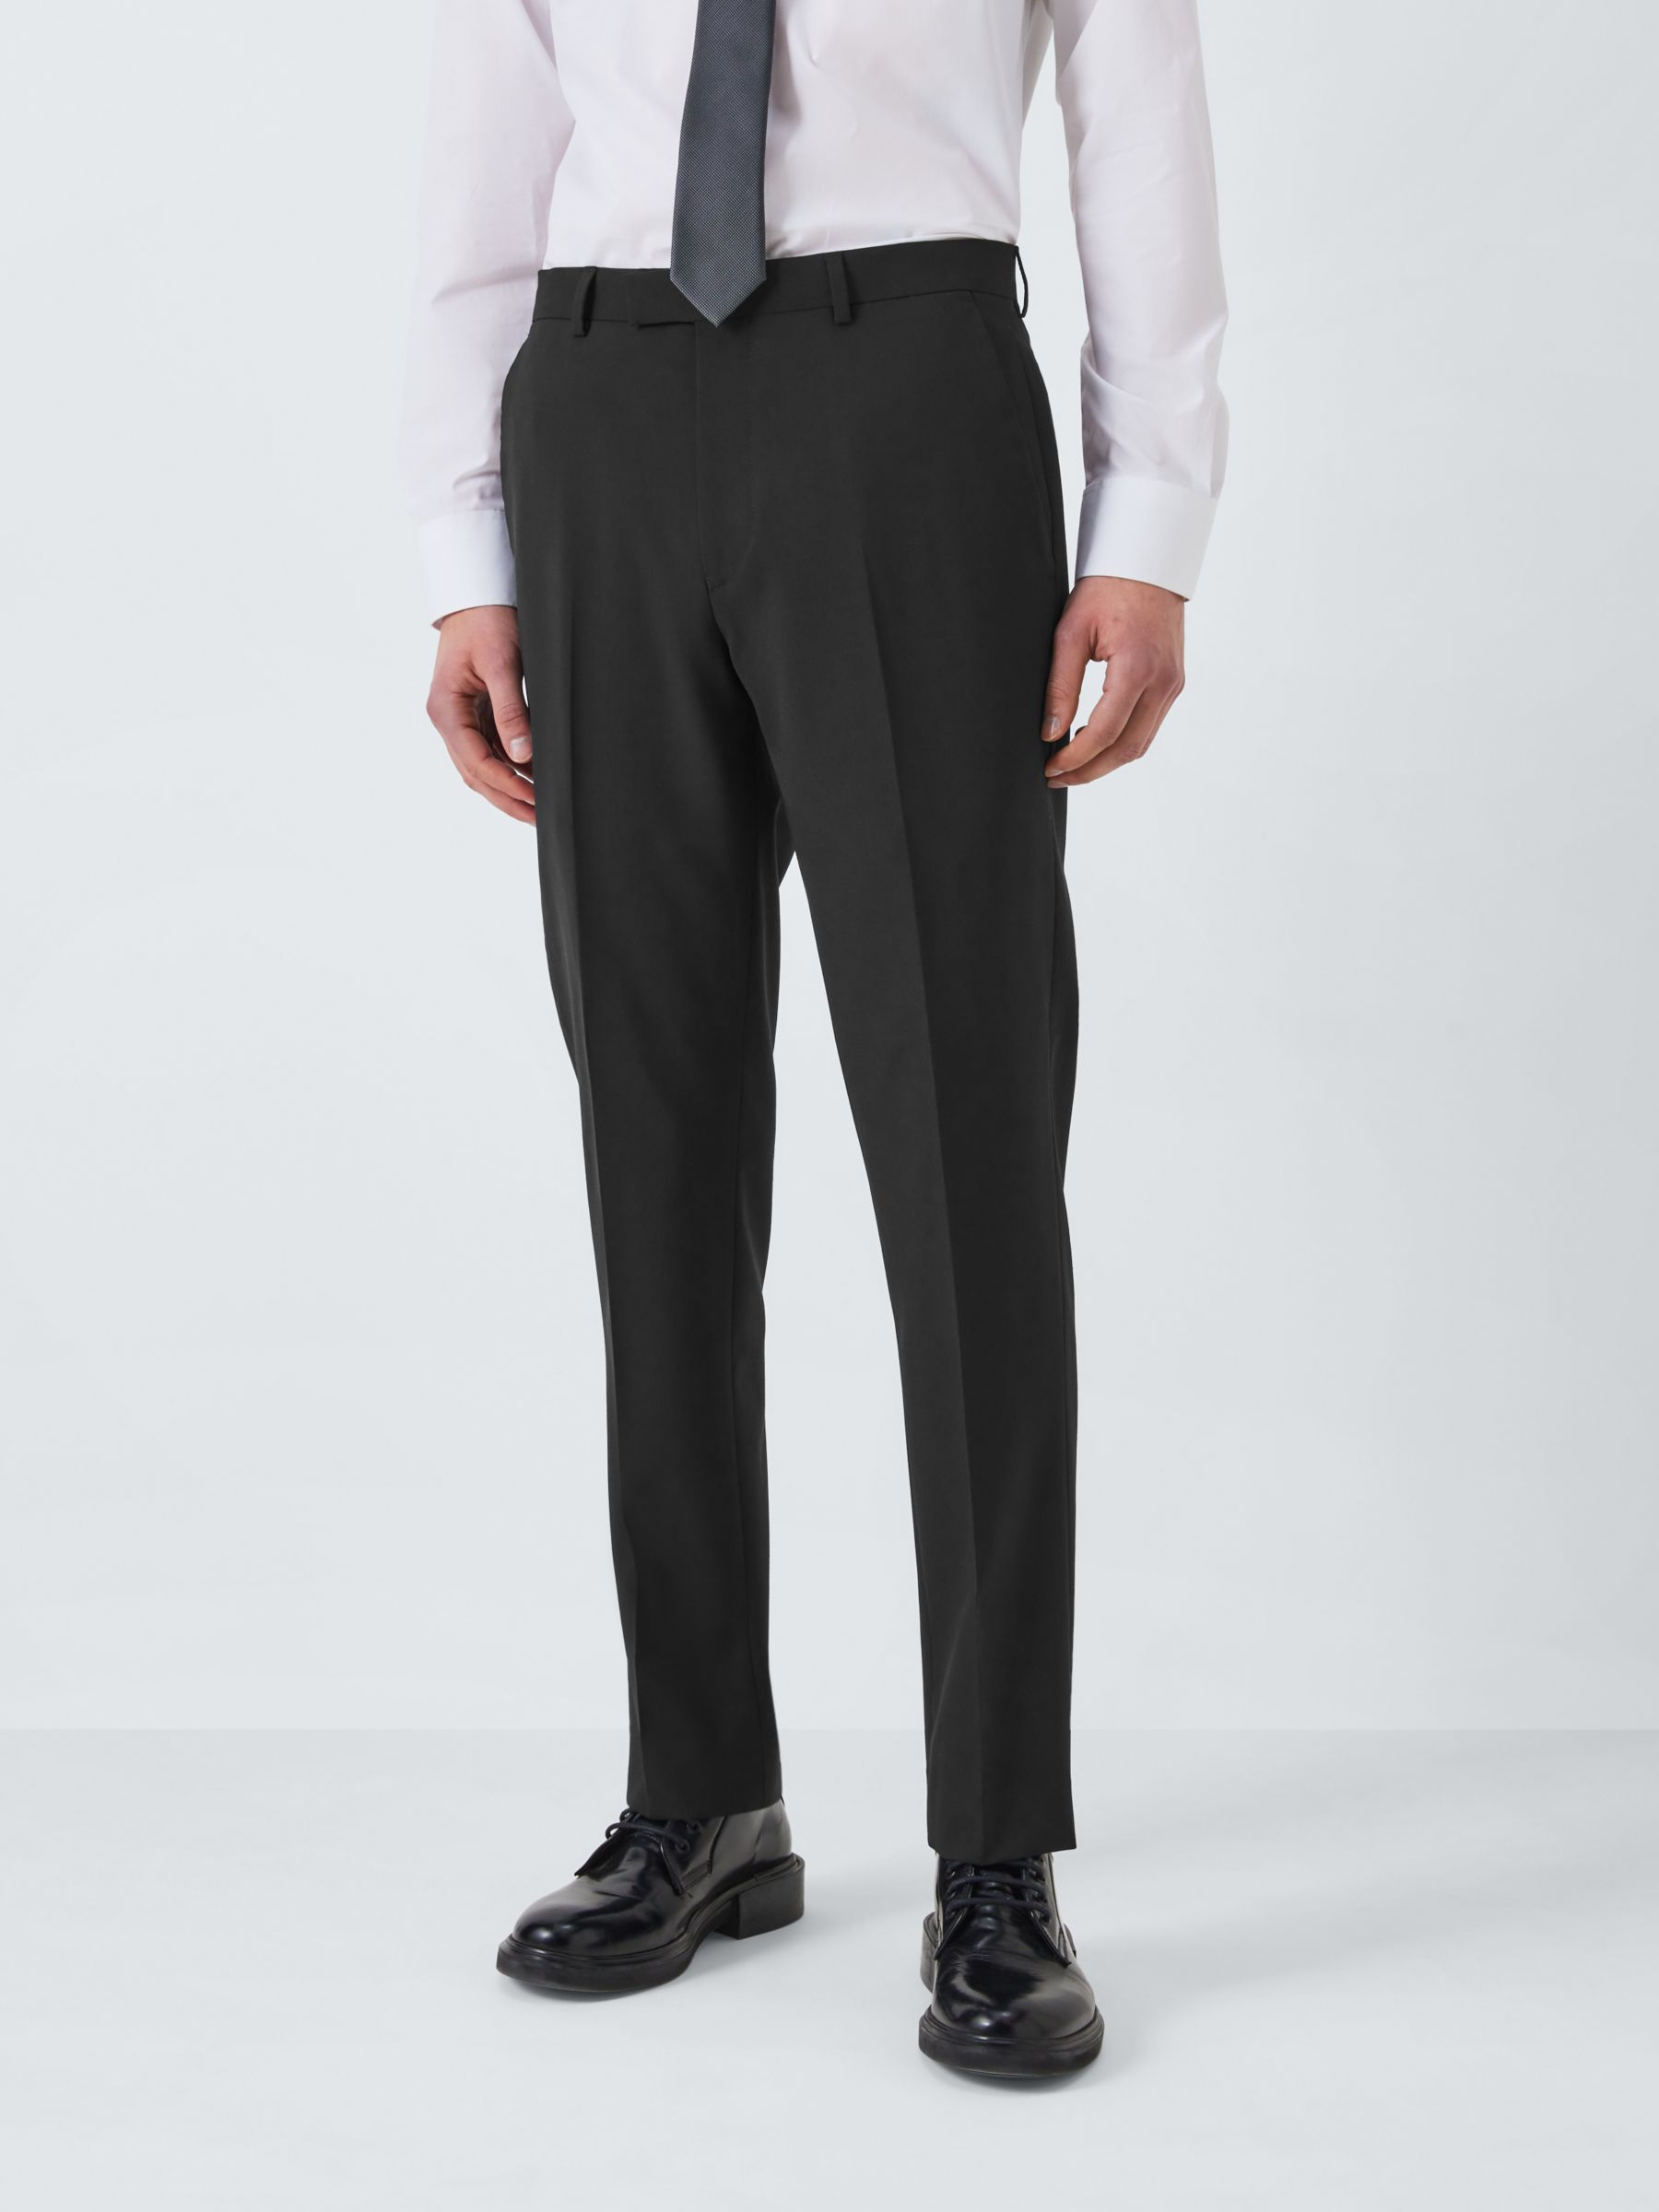 Slim Fit Mens Formal Wear Cotton Pant, Design/Pattern: Plain, Hand